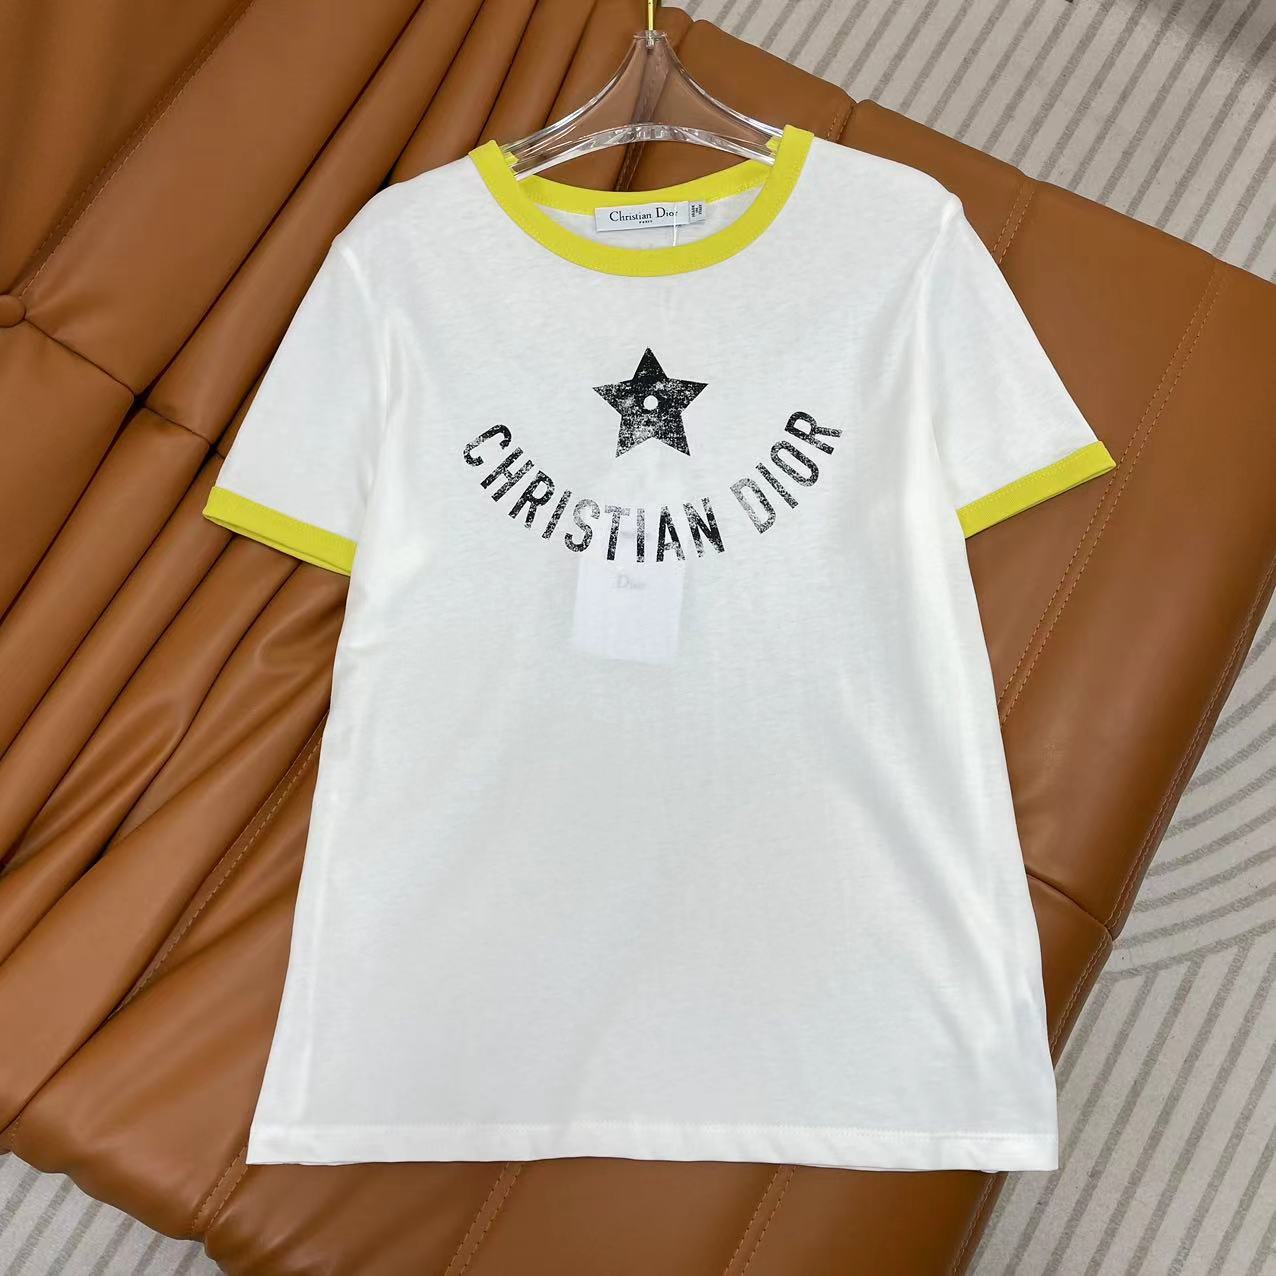 Dior Kleding T-Shirt Wit Afdrukken Katoen Herfstcollectie Korte mouw